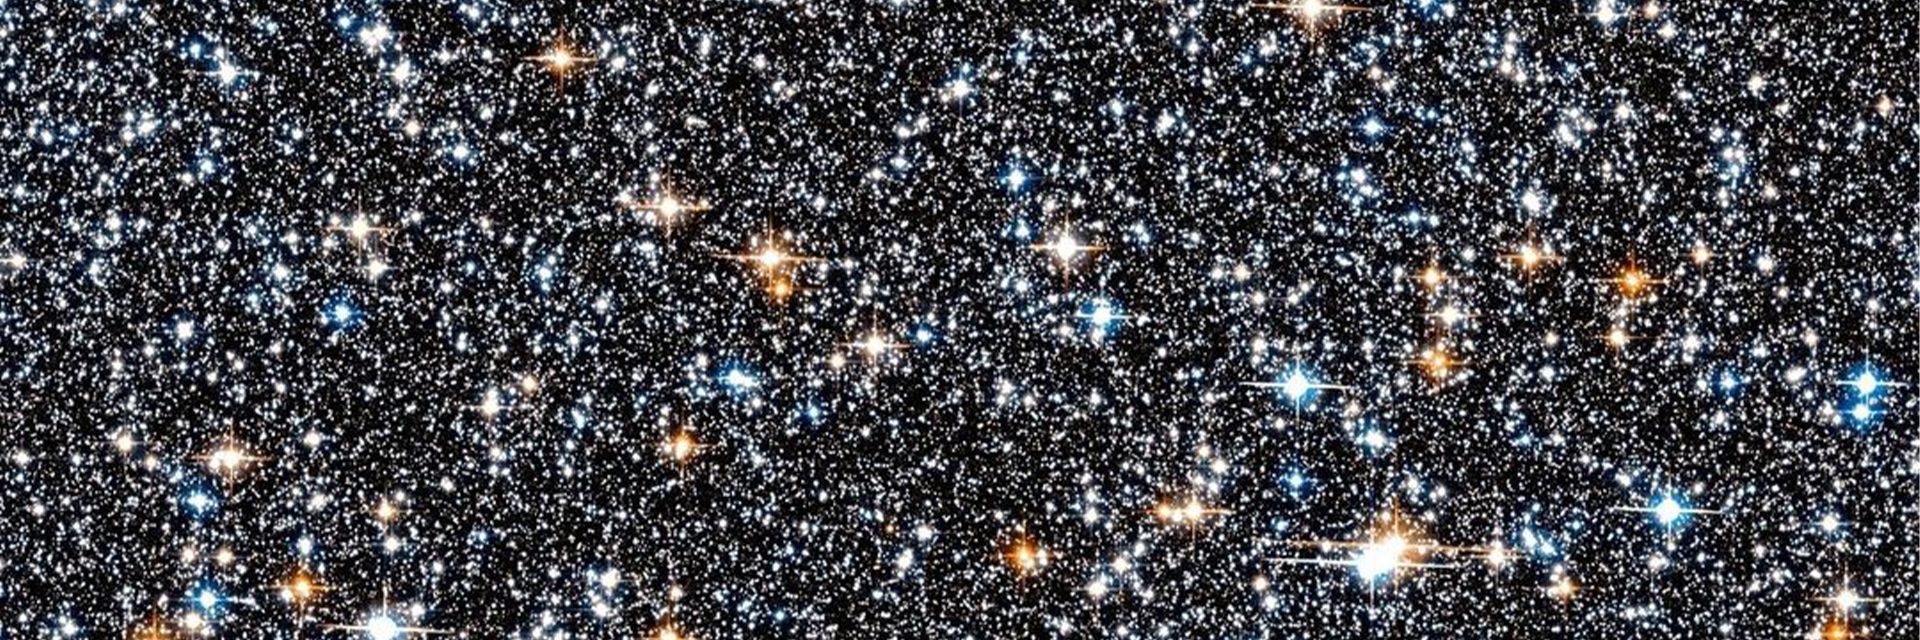 Официальный представитель НАСА поделился снимком коллекции этих галактических памятников в 26,000 XNUMX световых лет от Земли, сделанным телескопом Хаббл.